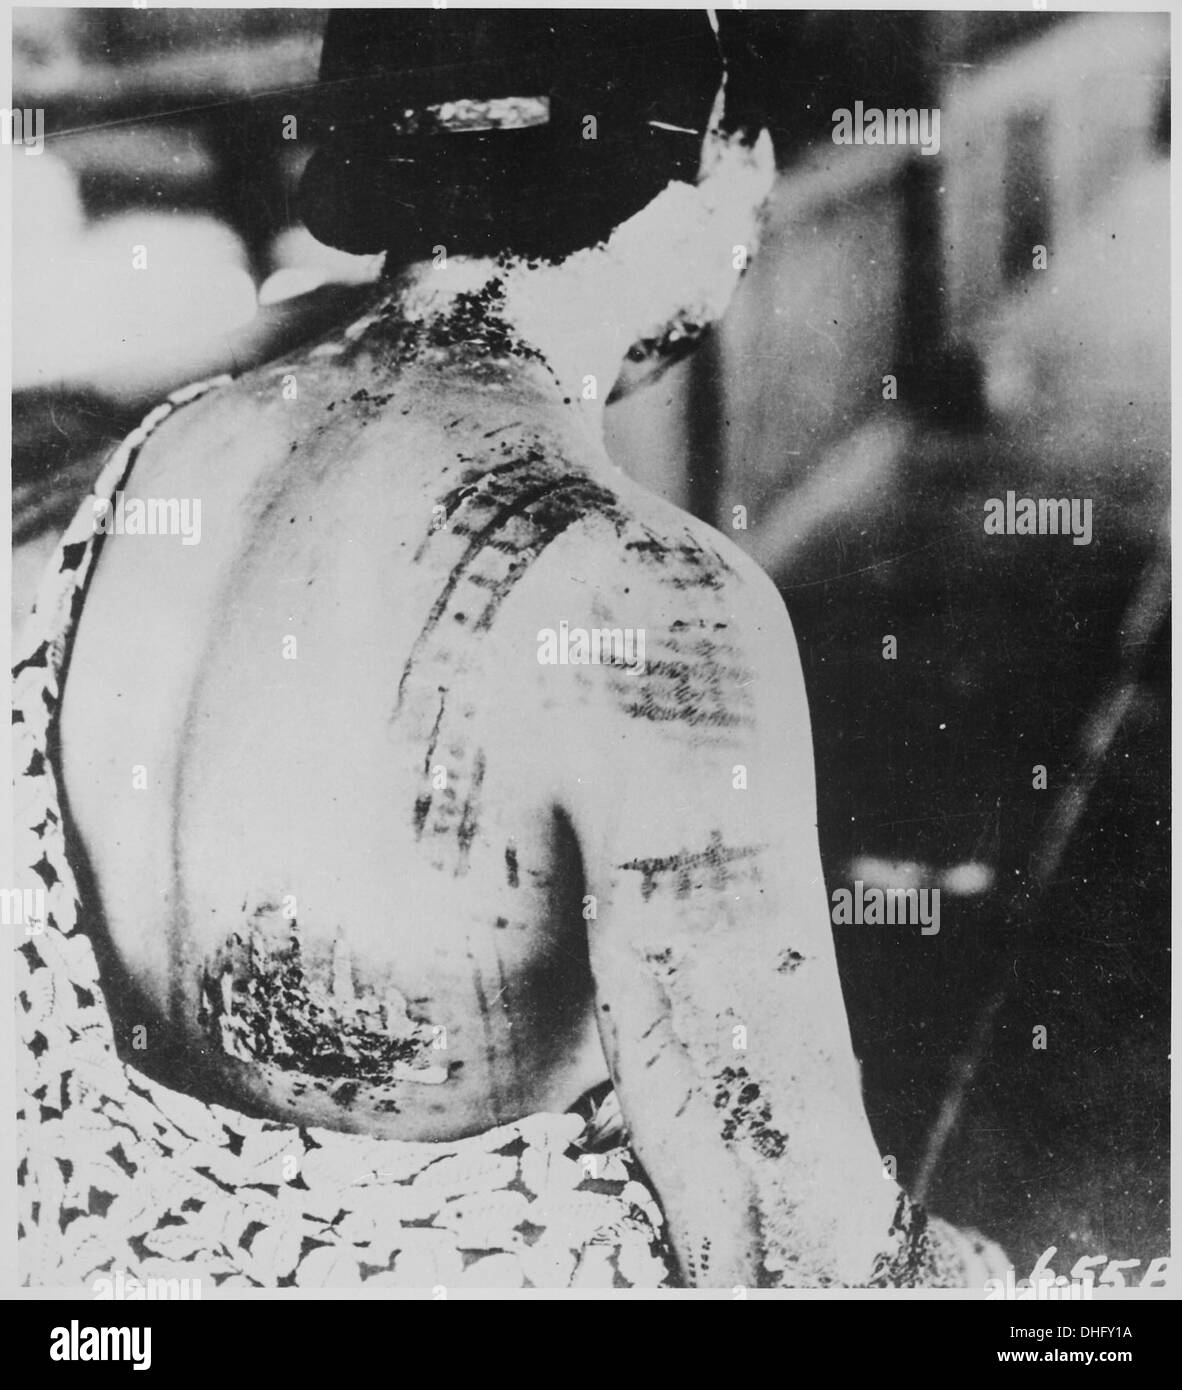 Die Haut des Patienten wird in einem Muster entspricht der dunkle Bildbereiche einen Kimono getragen zum Zeitpunkt der explosi 519685 verbrannt. Stockfoto